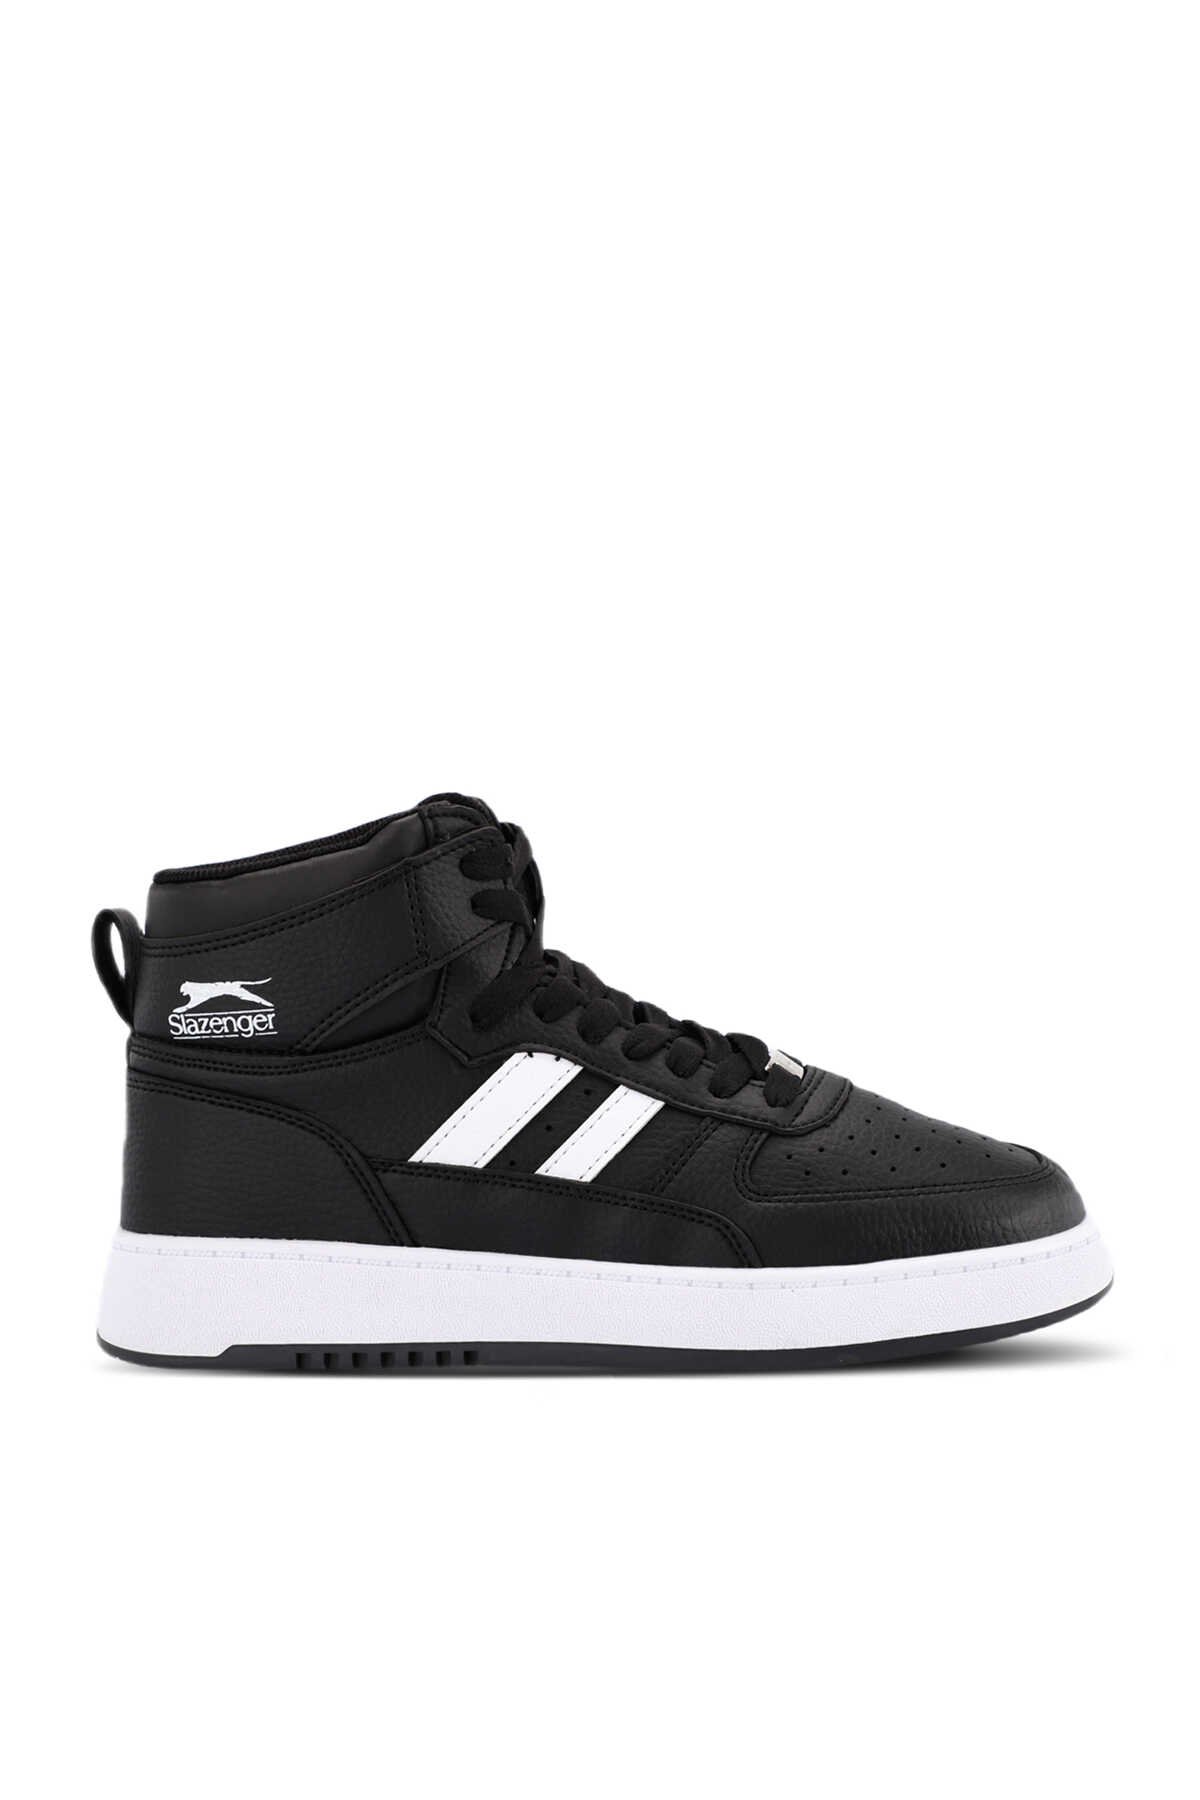 Slazenger - DAPHNE HIGH Sneaker Kadın Ayakkabı Siyah / Beyaz